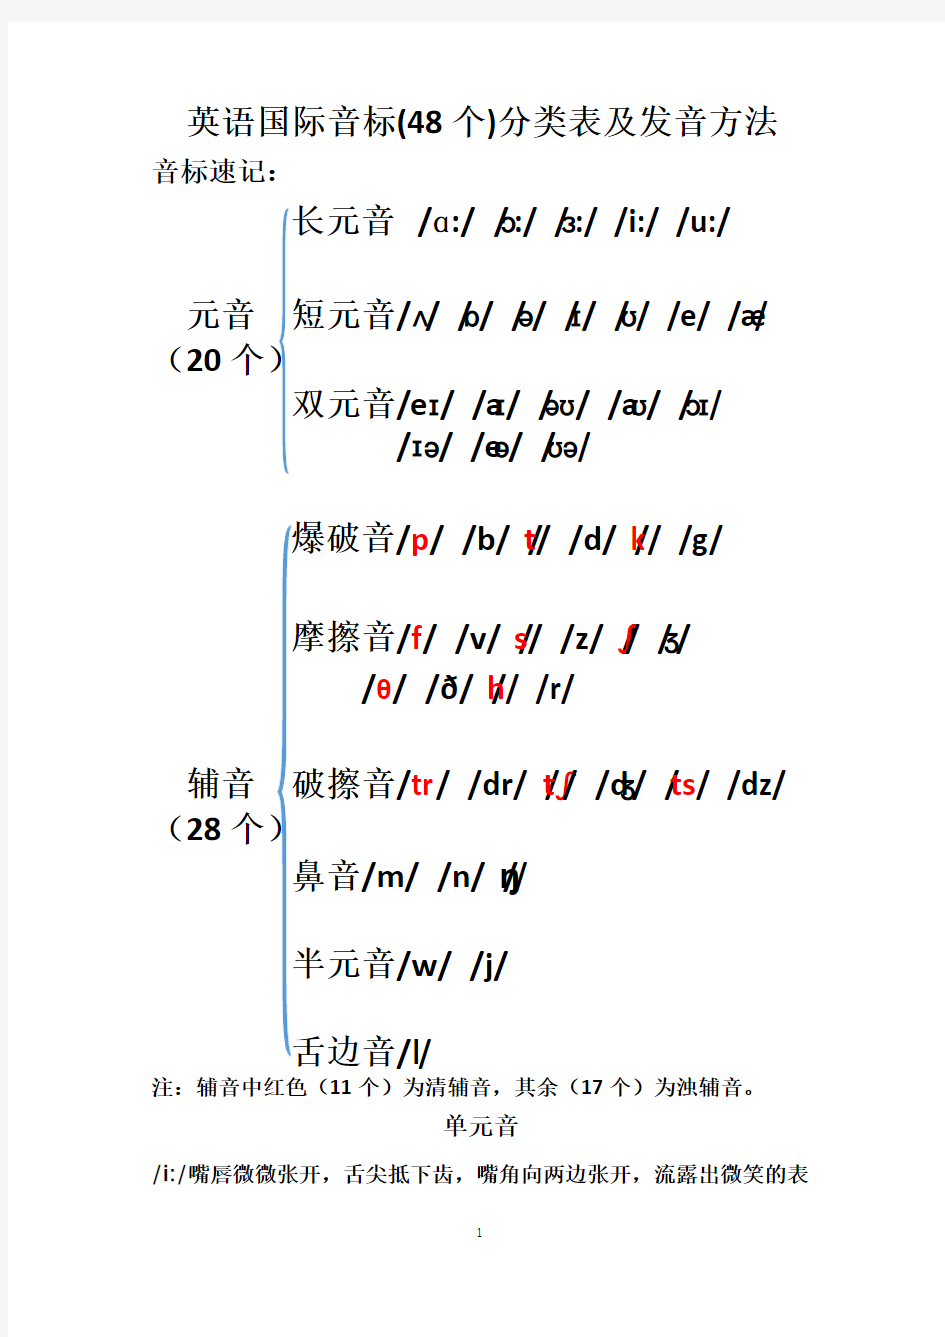 英语国际音标(48个)分类表及发音方法